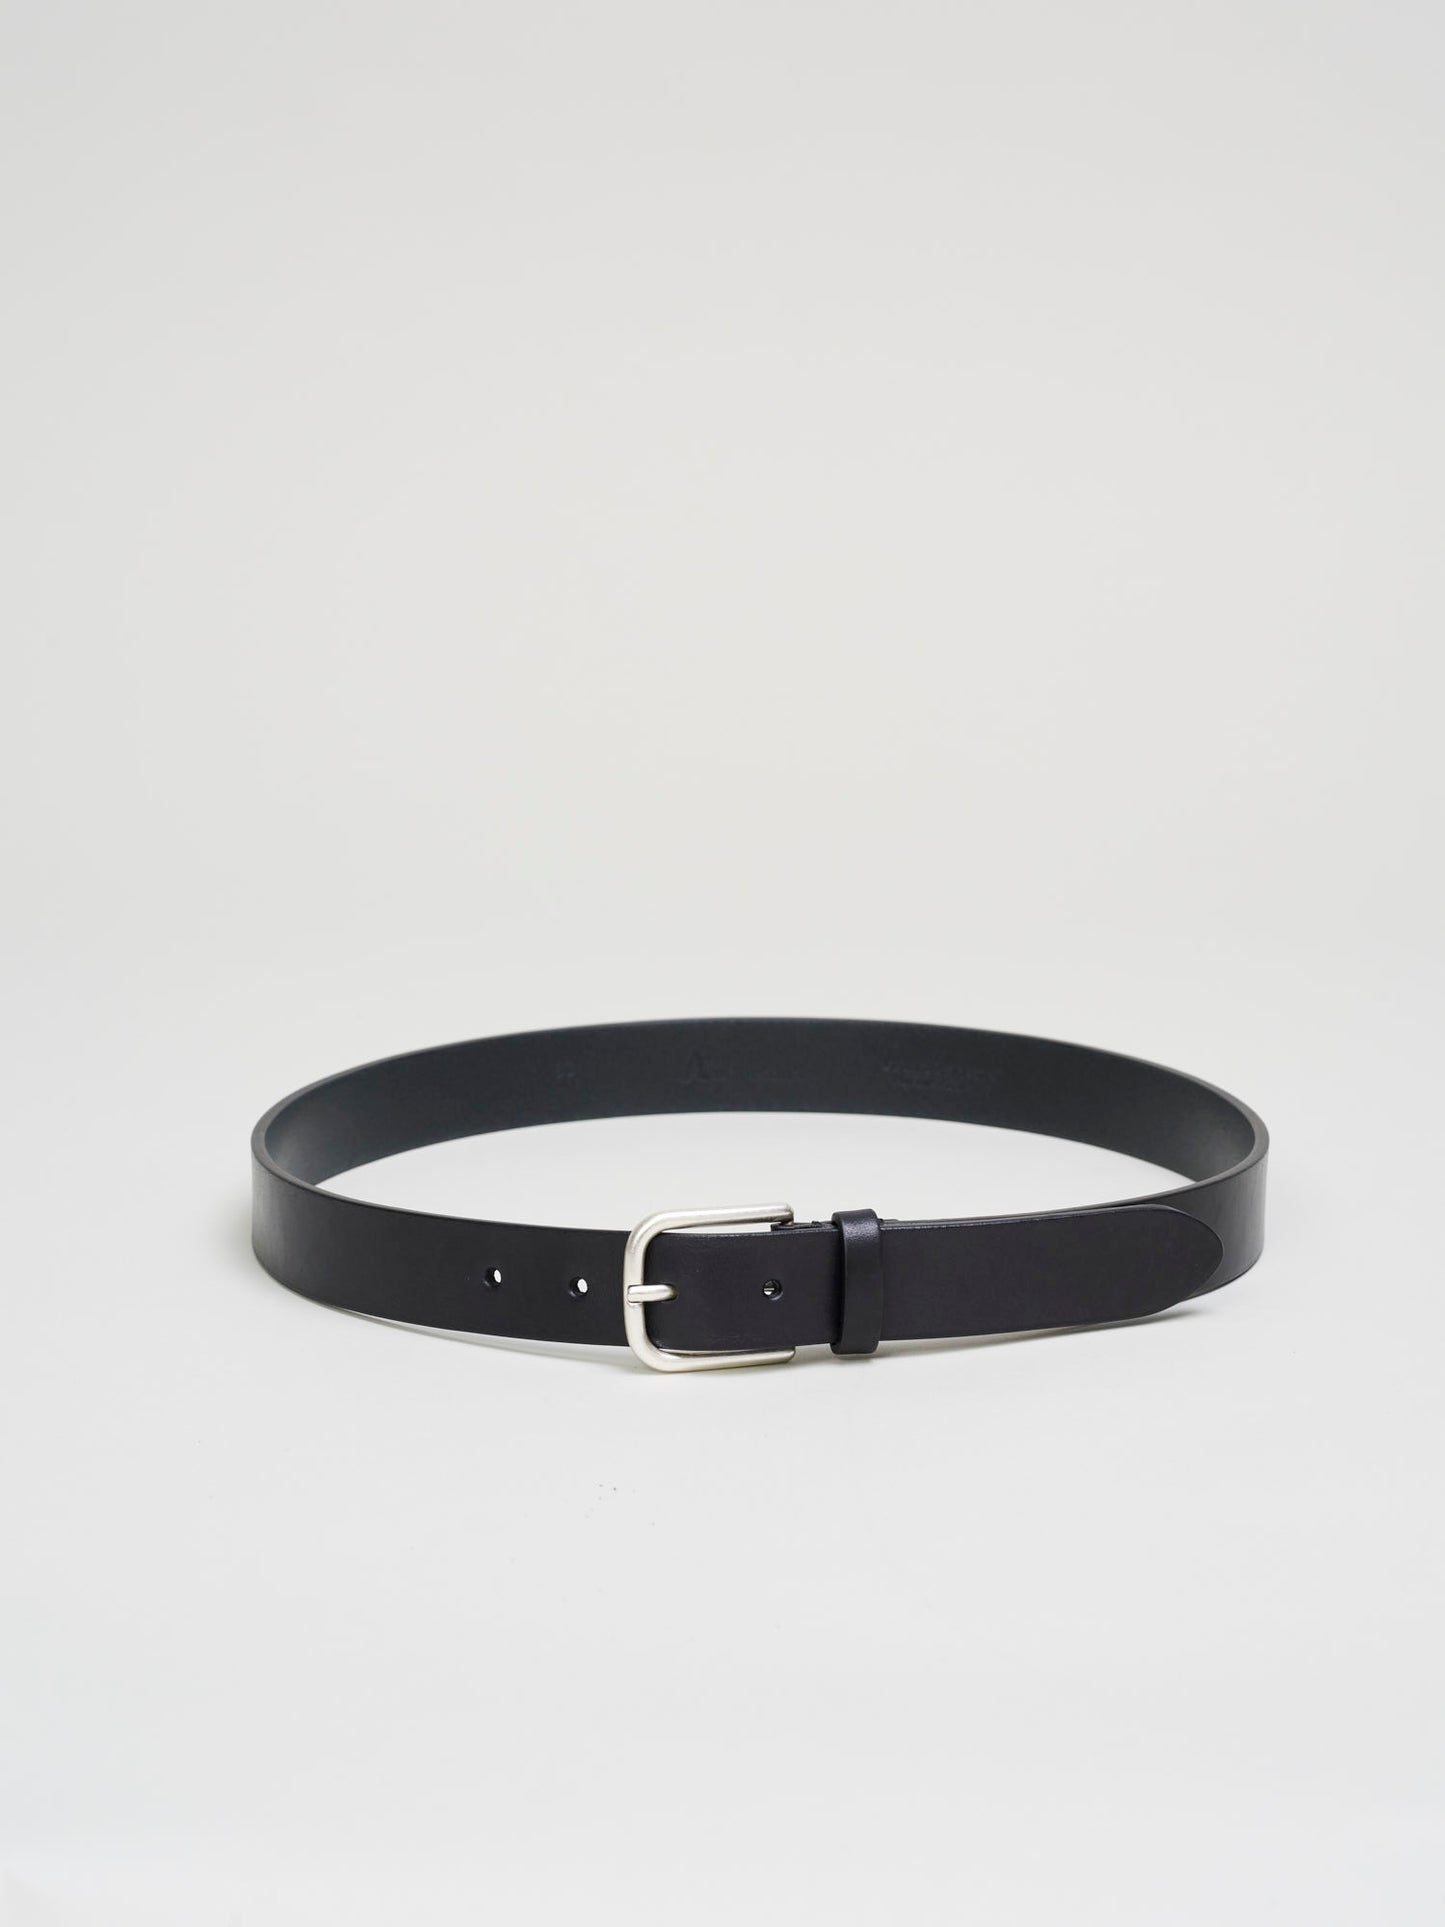 Leather Belt, Black - Goods